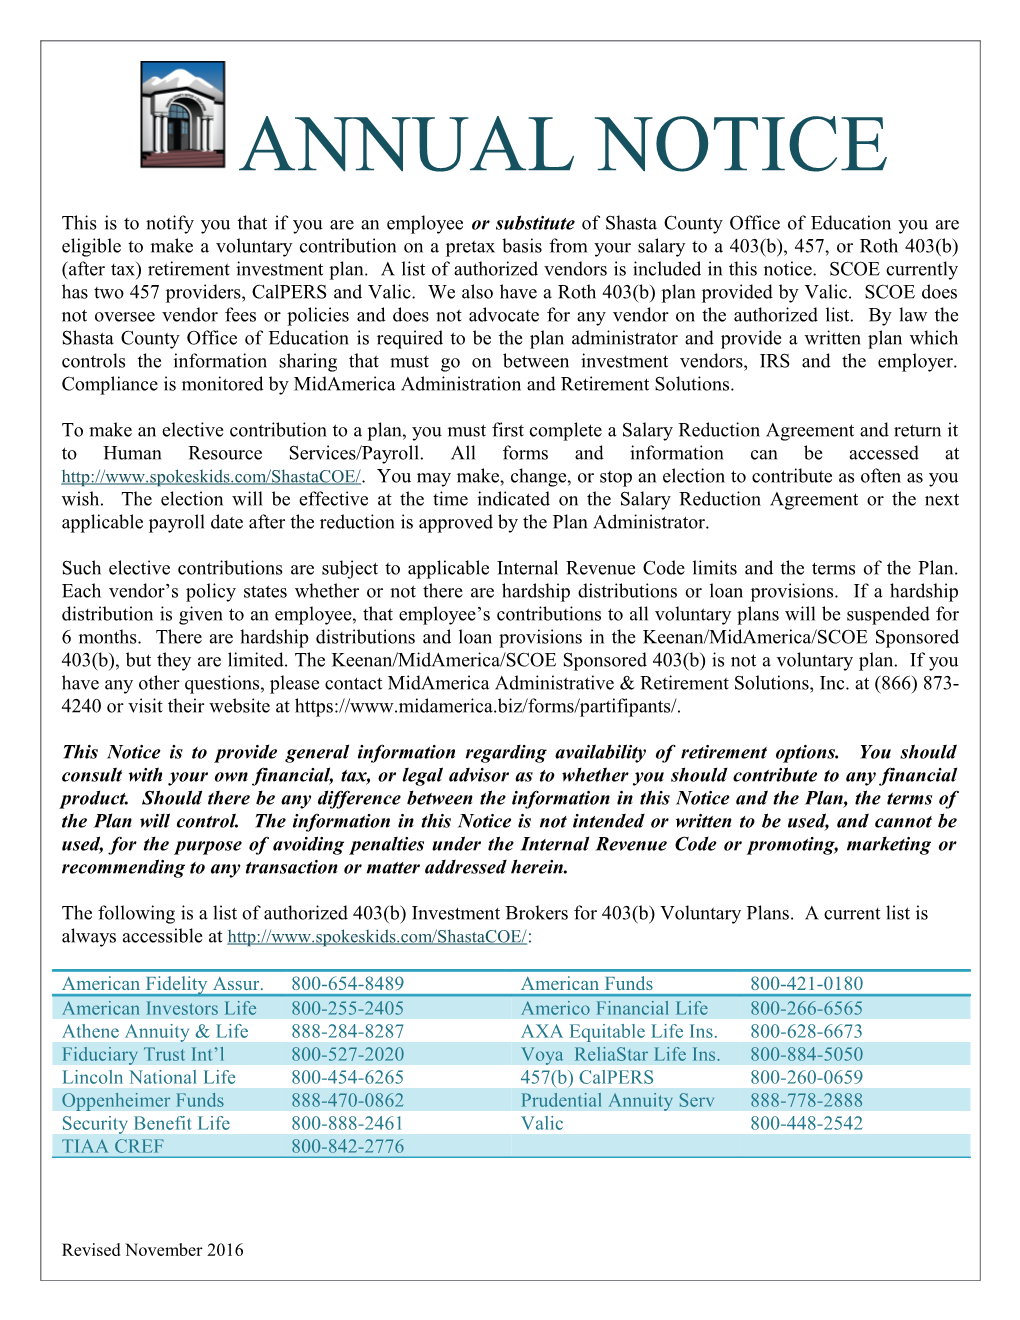 Annual Notice